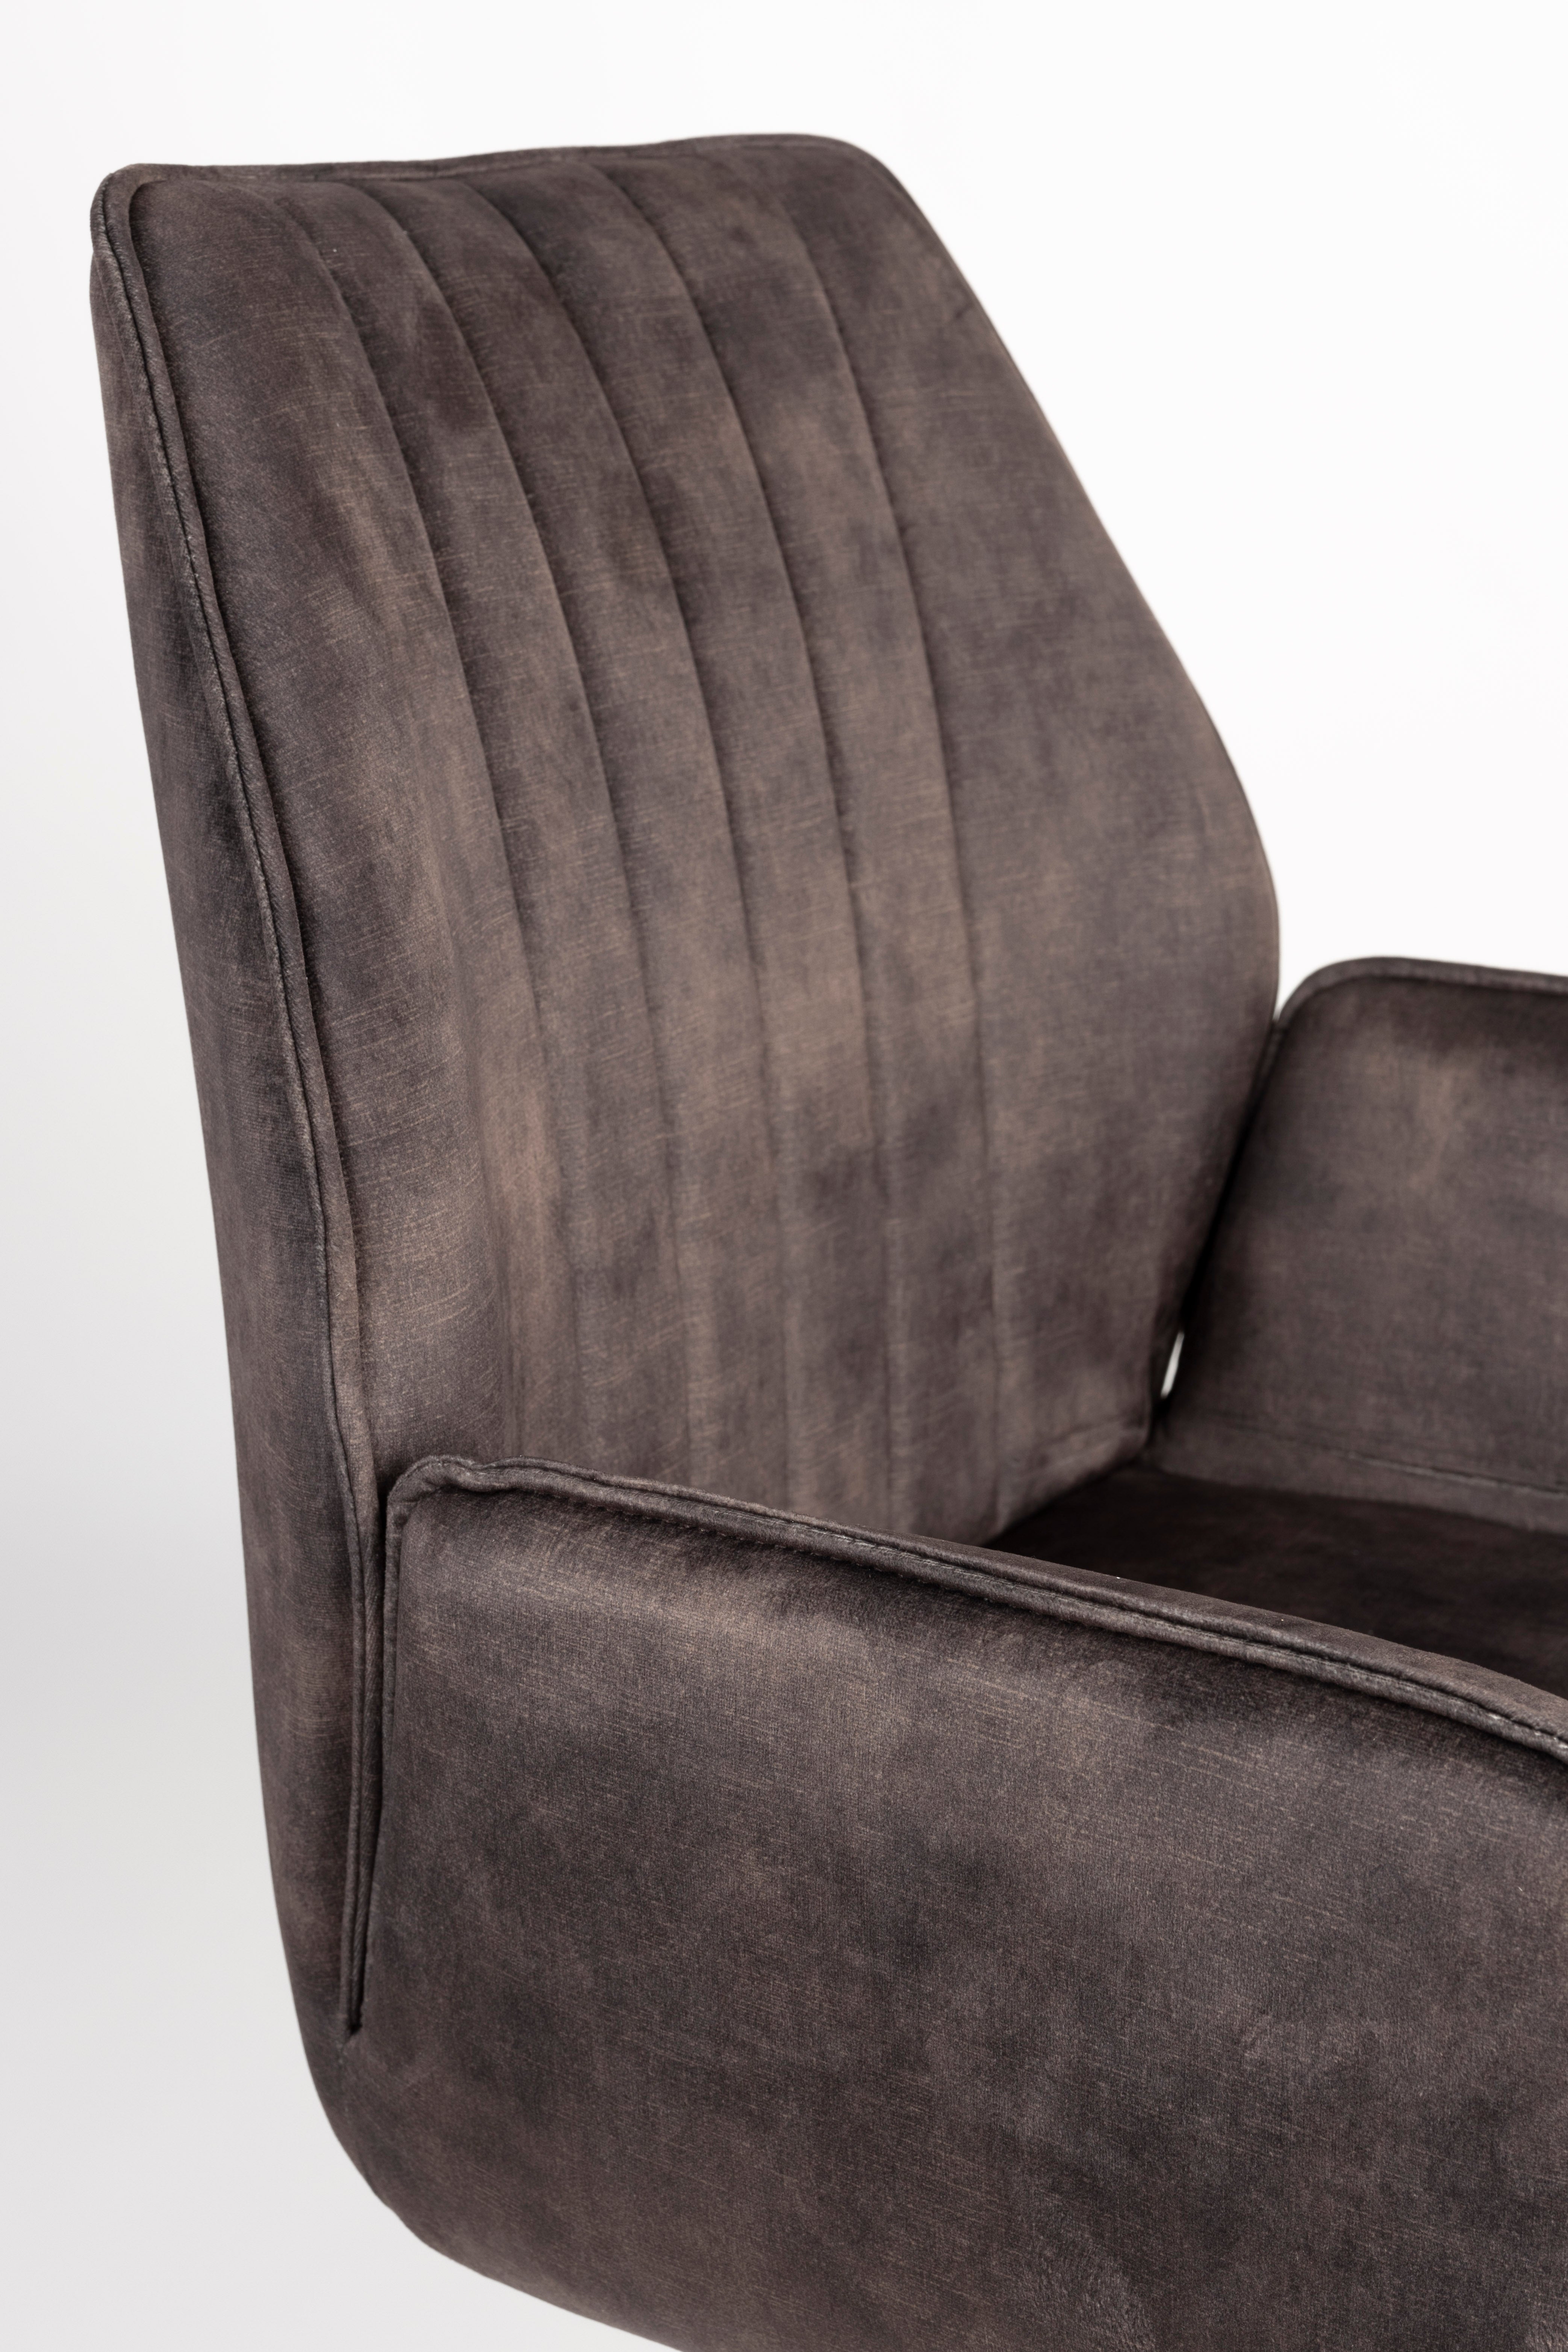 Armlehnstuhl Jamie Wood in Dunkelbraun/Schwarz präsentiert im Onlineshop von KAQTU Design AG. Stuhl mit Armlehne ist von White Label Living